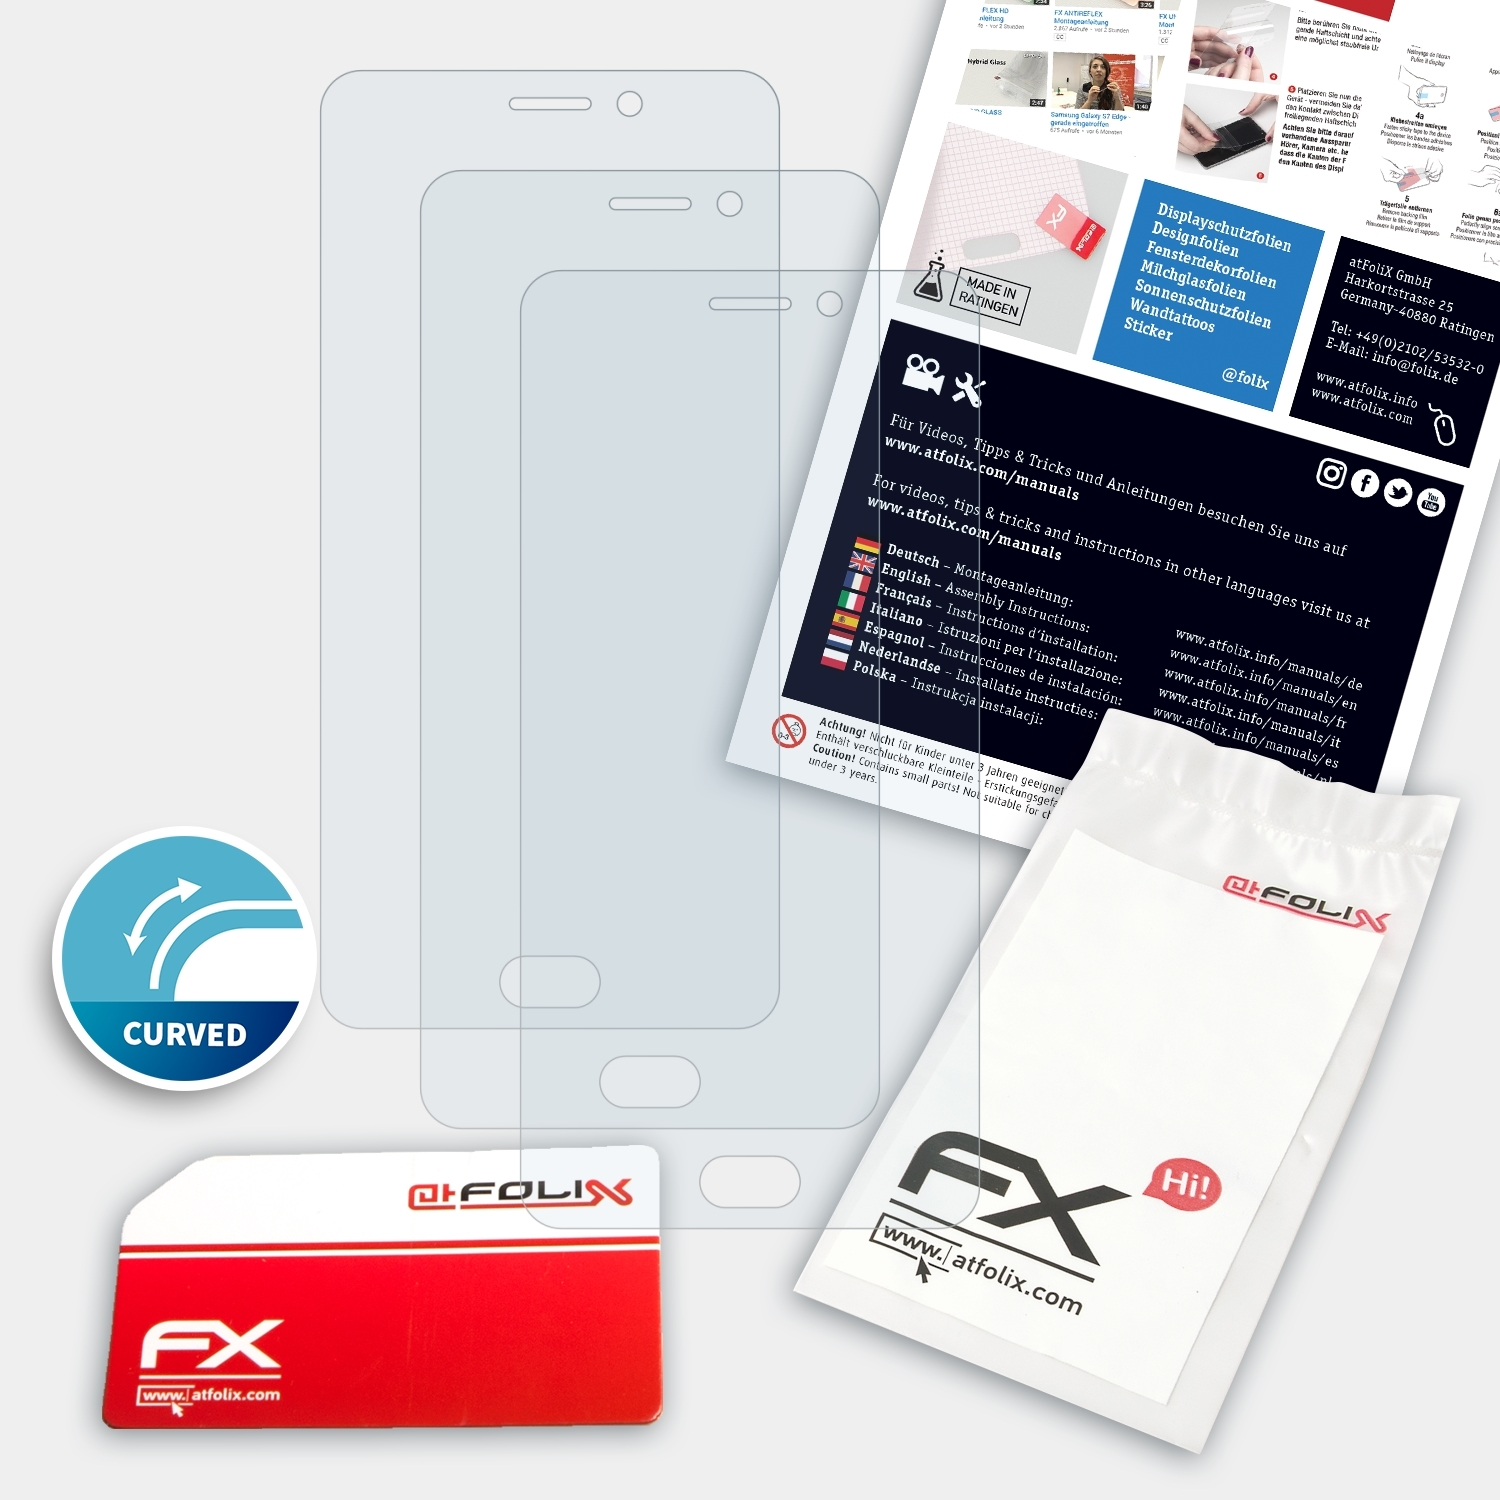 3x Note) ATFOLIX FX-ActiFleX Displayschutz(für M6 Meizu